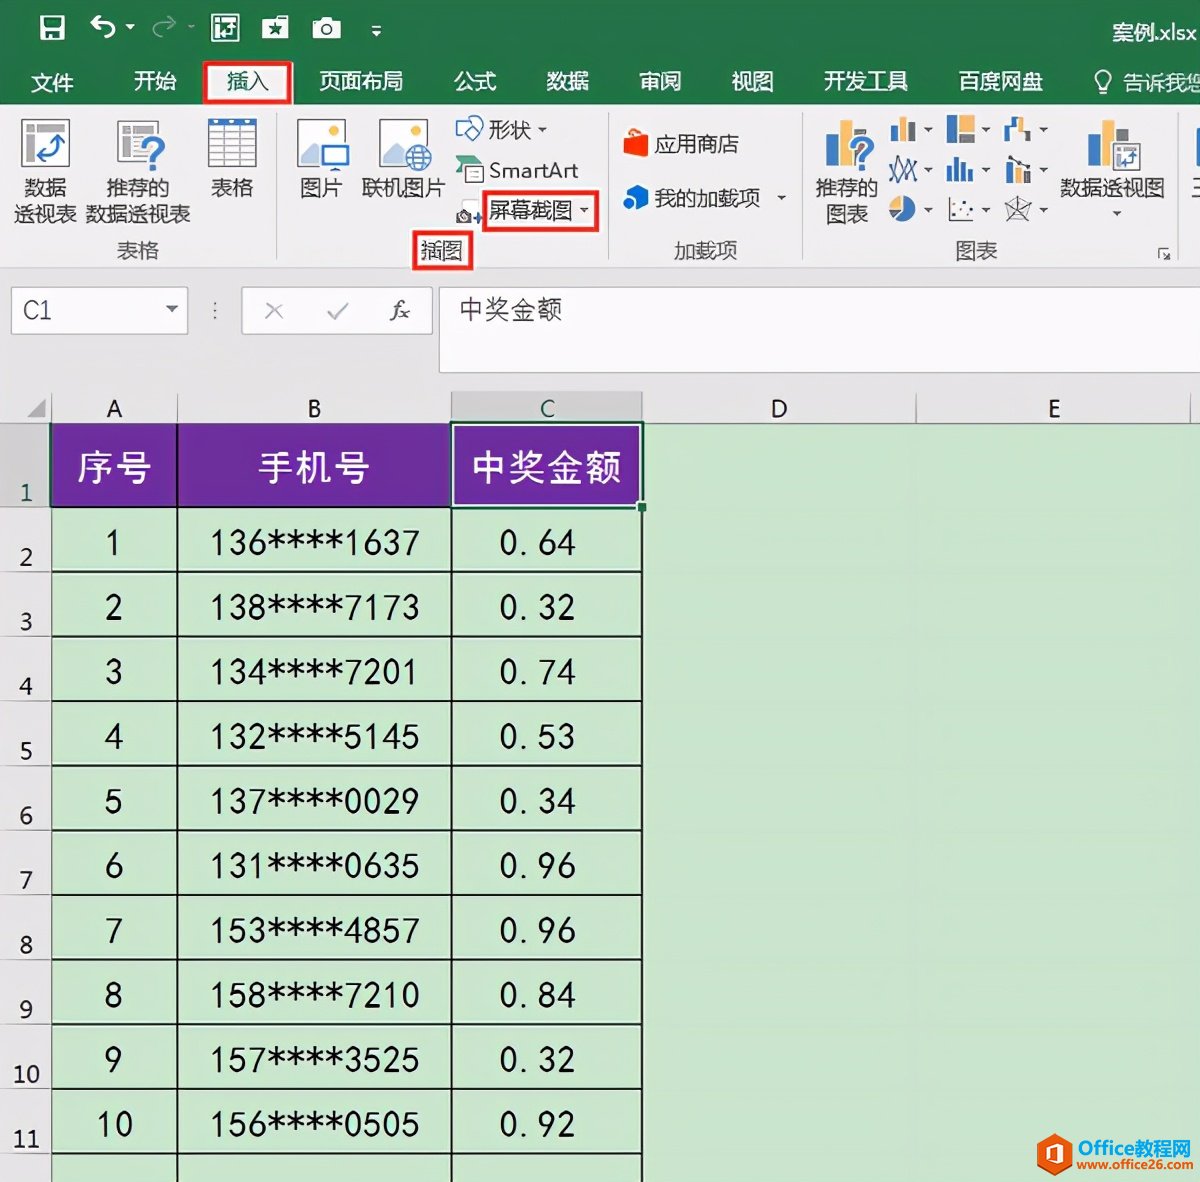 不用安装其他软件，Excel自带的屏幕截图功能即可快速截图